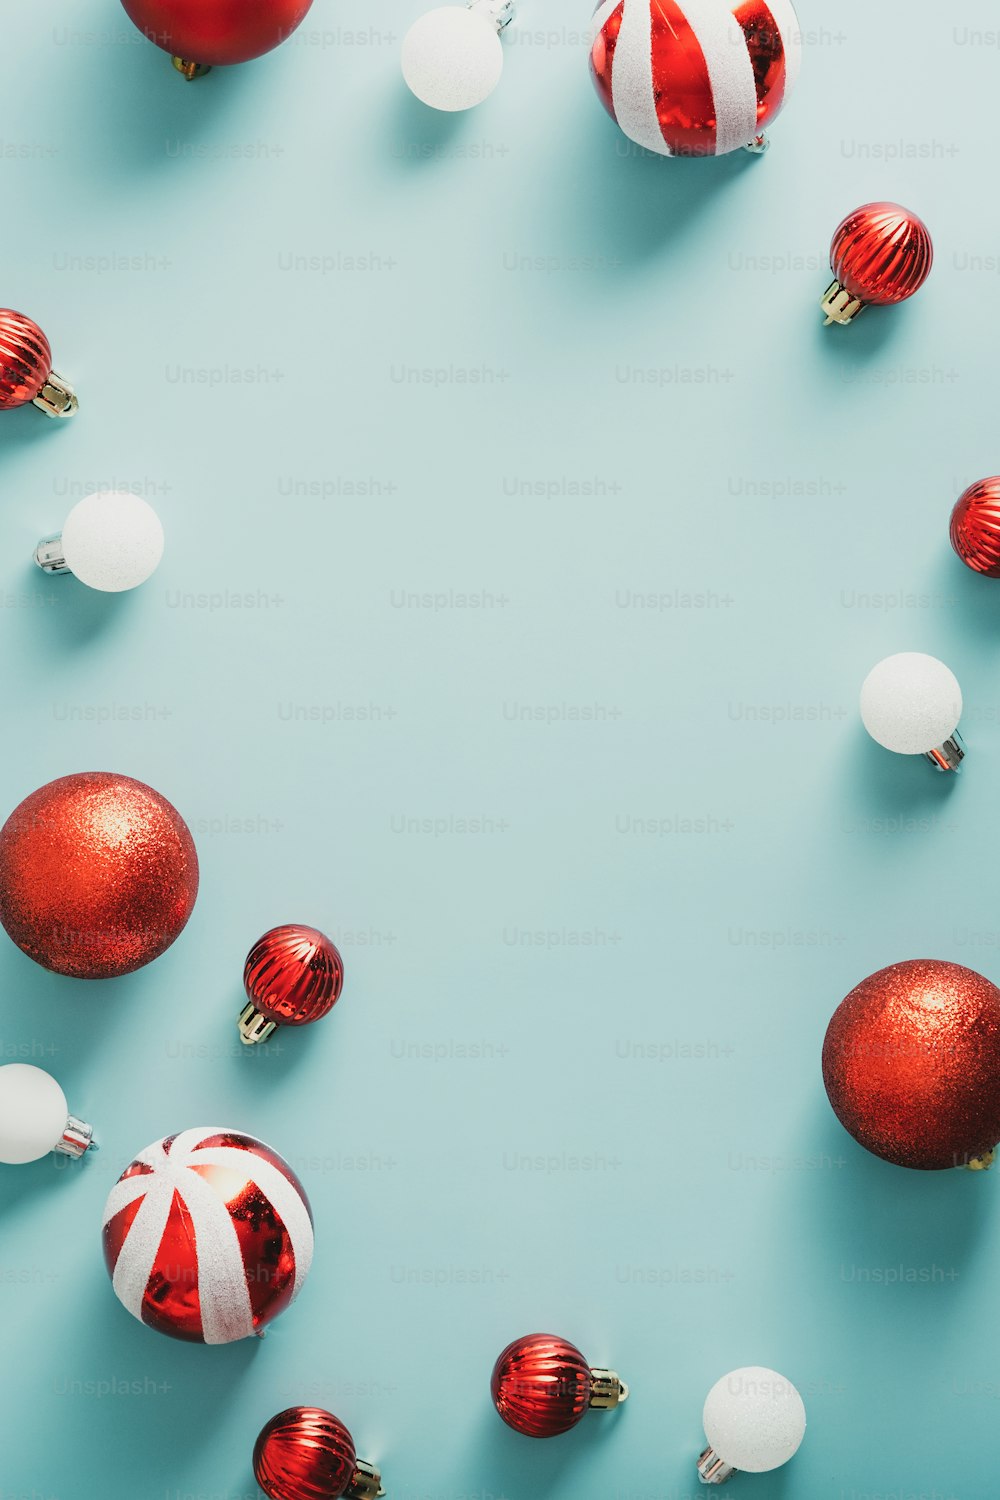 メリークリスマスと新年あけましておめでとうございますポスターデザイン。青い背景にビンテージの縞模様のボールで作られたフレーム。フラットレイ、上面図、コピースペース。